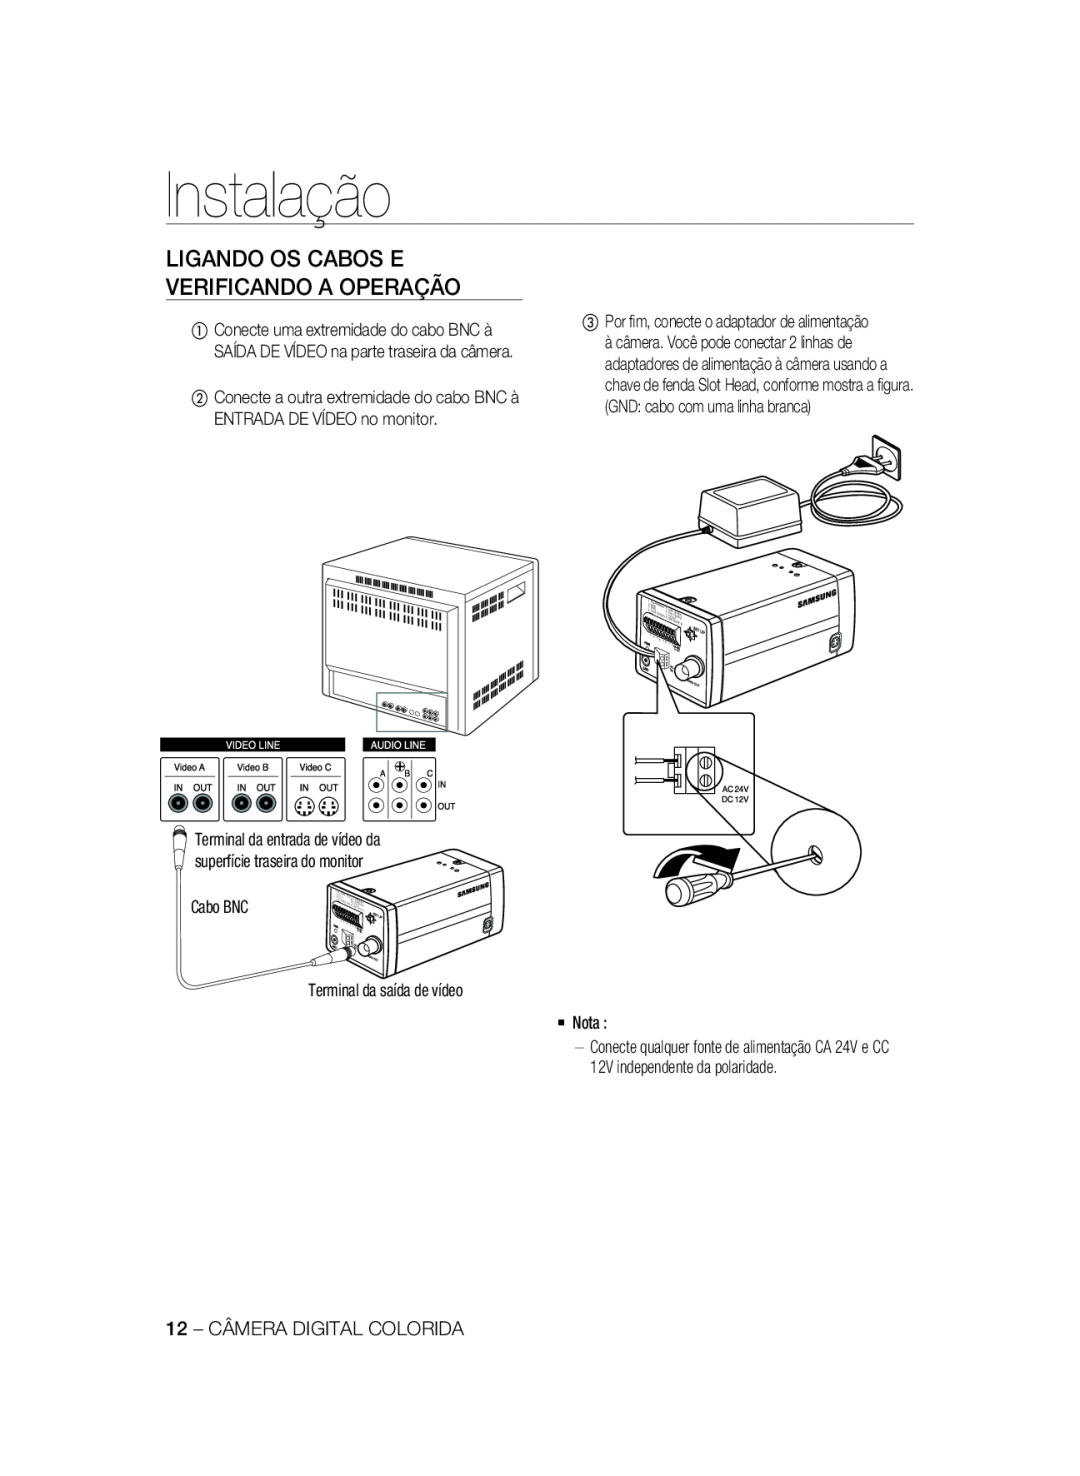 Samsung SCC-A2333P, SCC-A2033P manual Instalação, Ligando Os Cabos E Verificando A Operação 